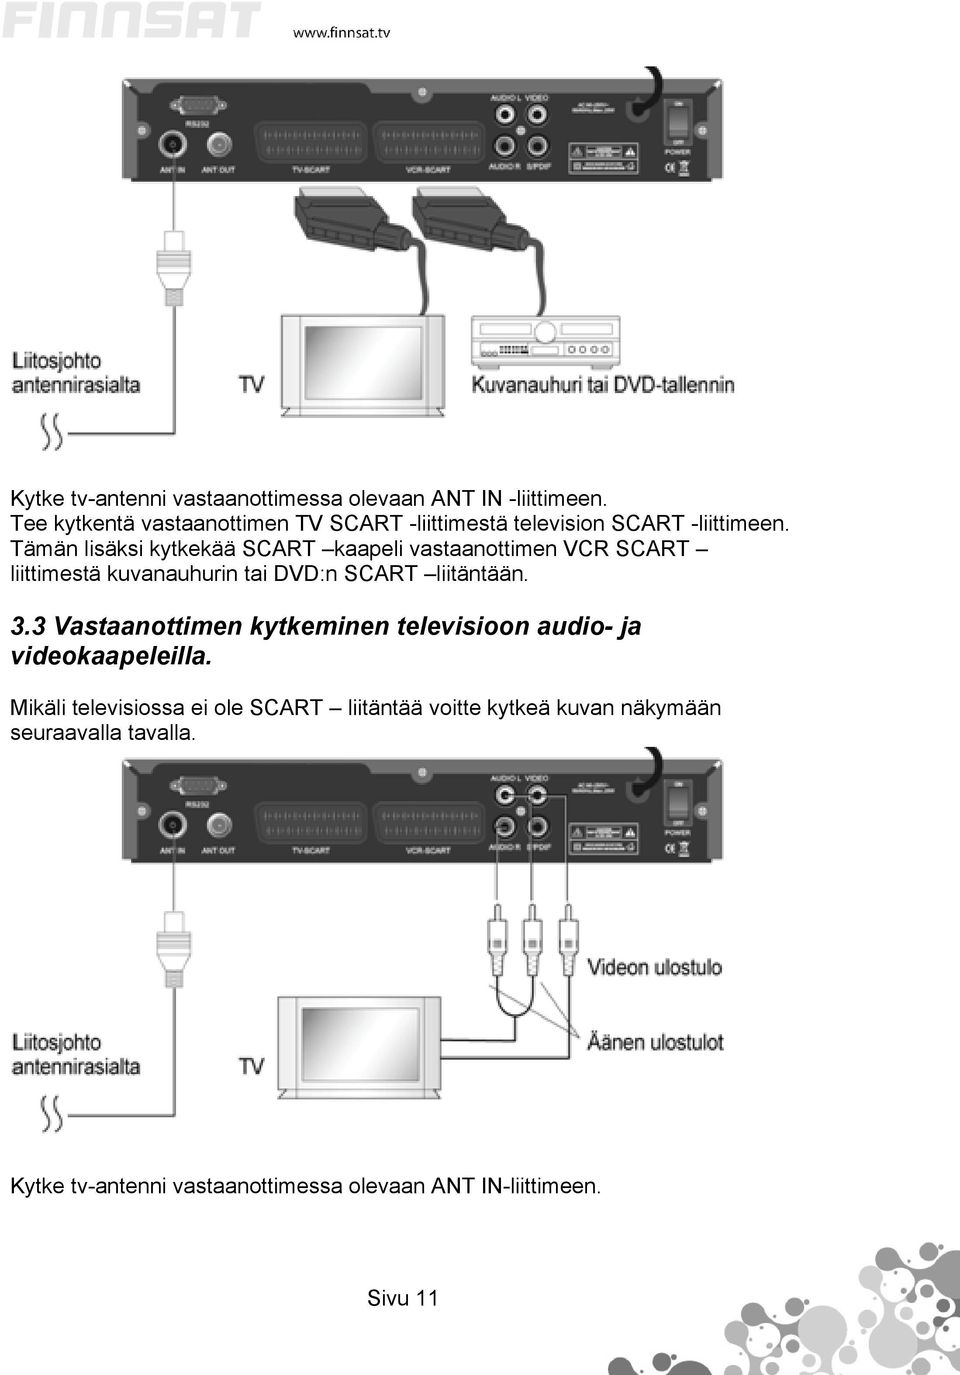 Tämän lisäksi kytkekää SCART kaapeli vastaanottimen VCR SCART liittimestä kuvanauhurin tai DVD:n SCART liitäntään. 3.